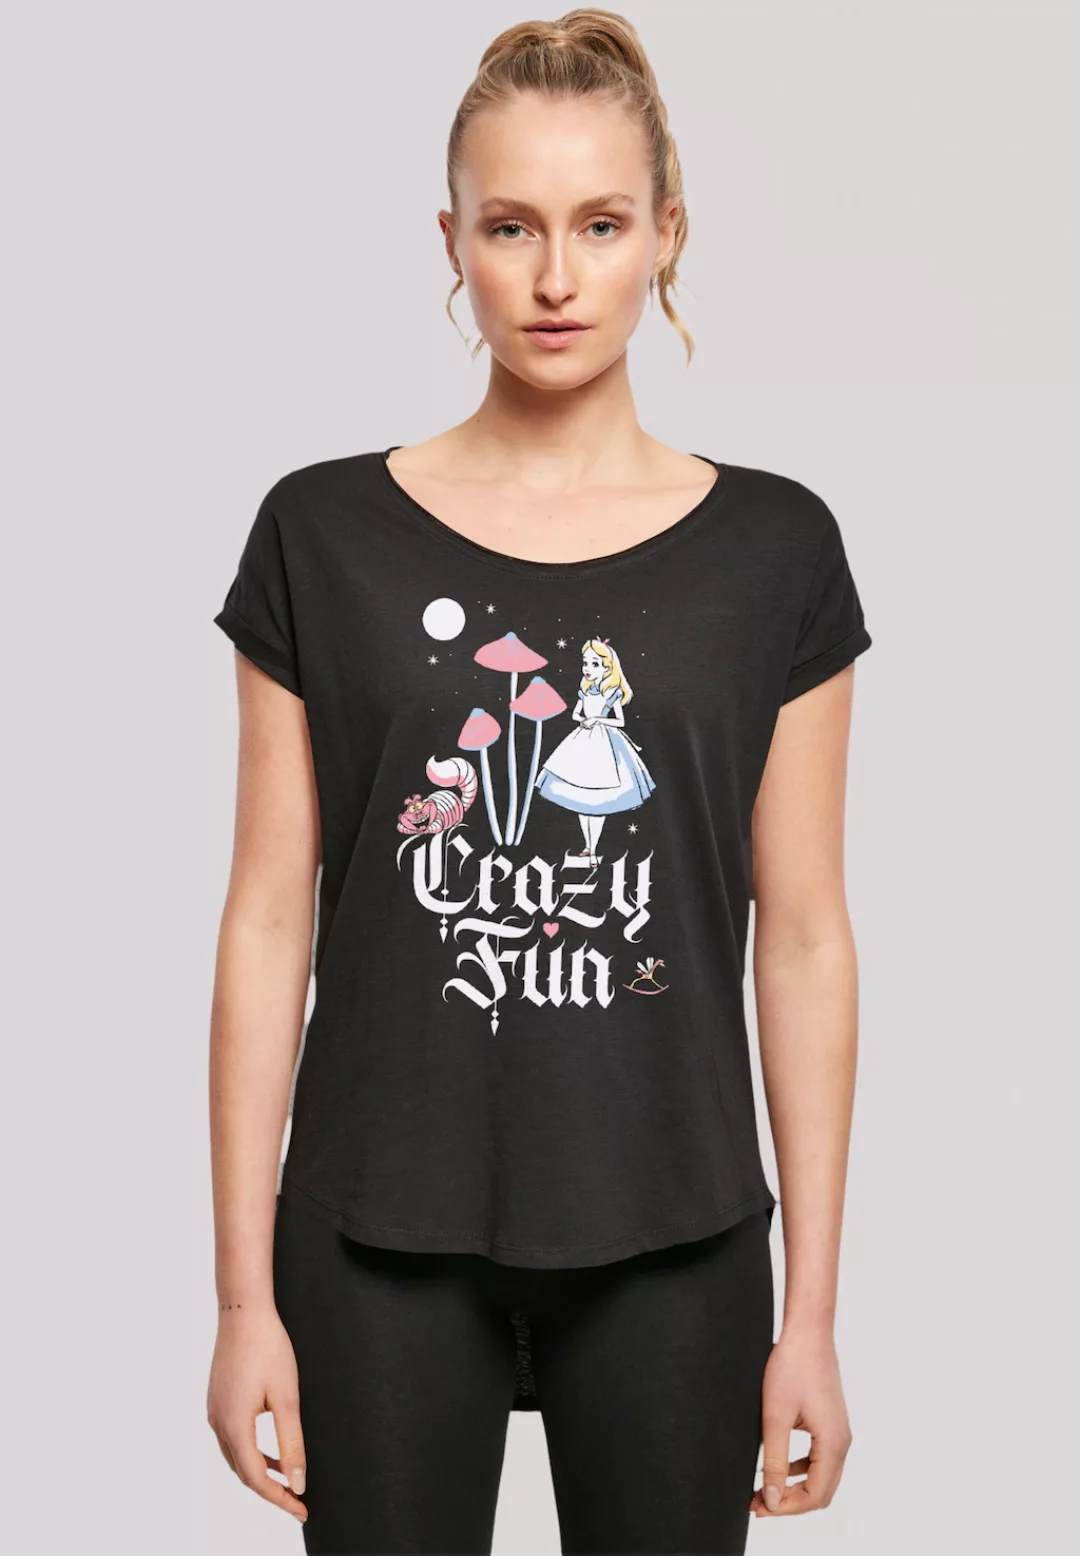 F4NT4STIC T-Shirt "Disney Alice im Wunderland Crazy Fun", Premium Qualität günstig online kaufen